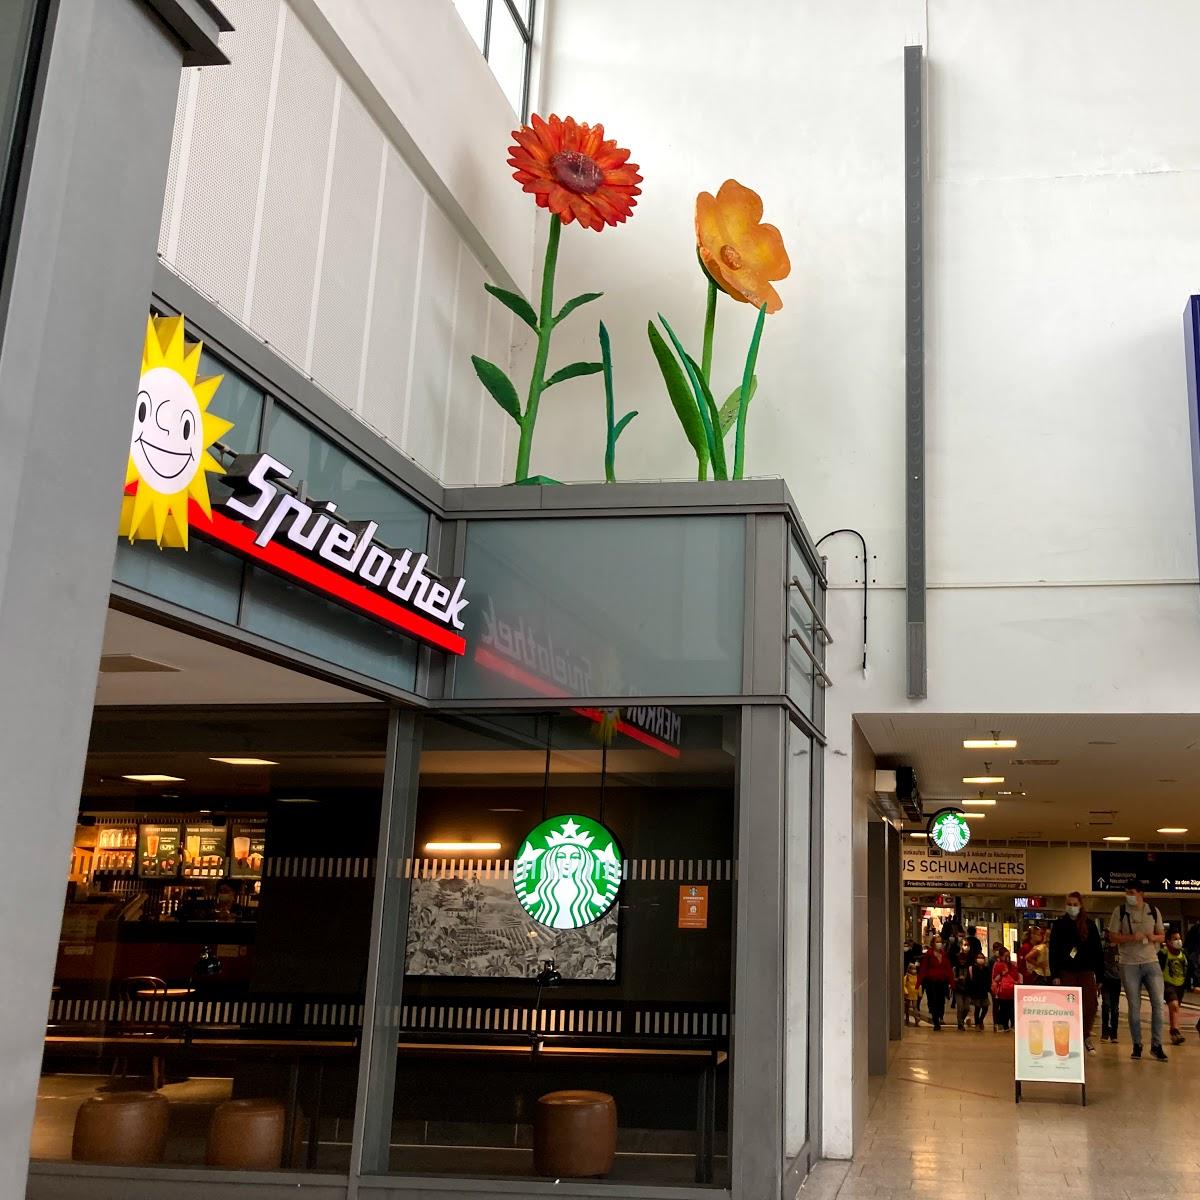 Restaurant "Starbucks" in Duisburg